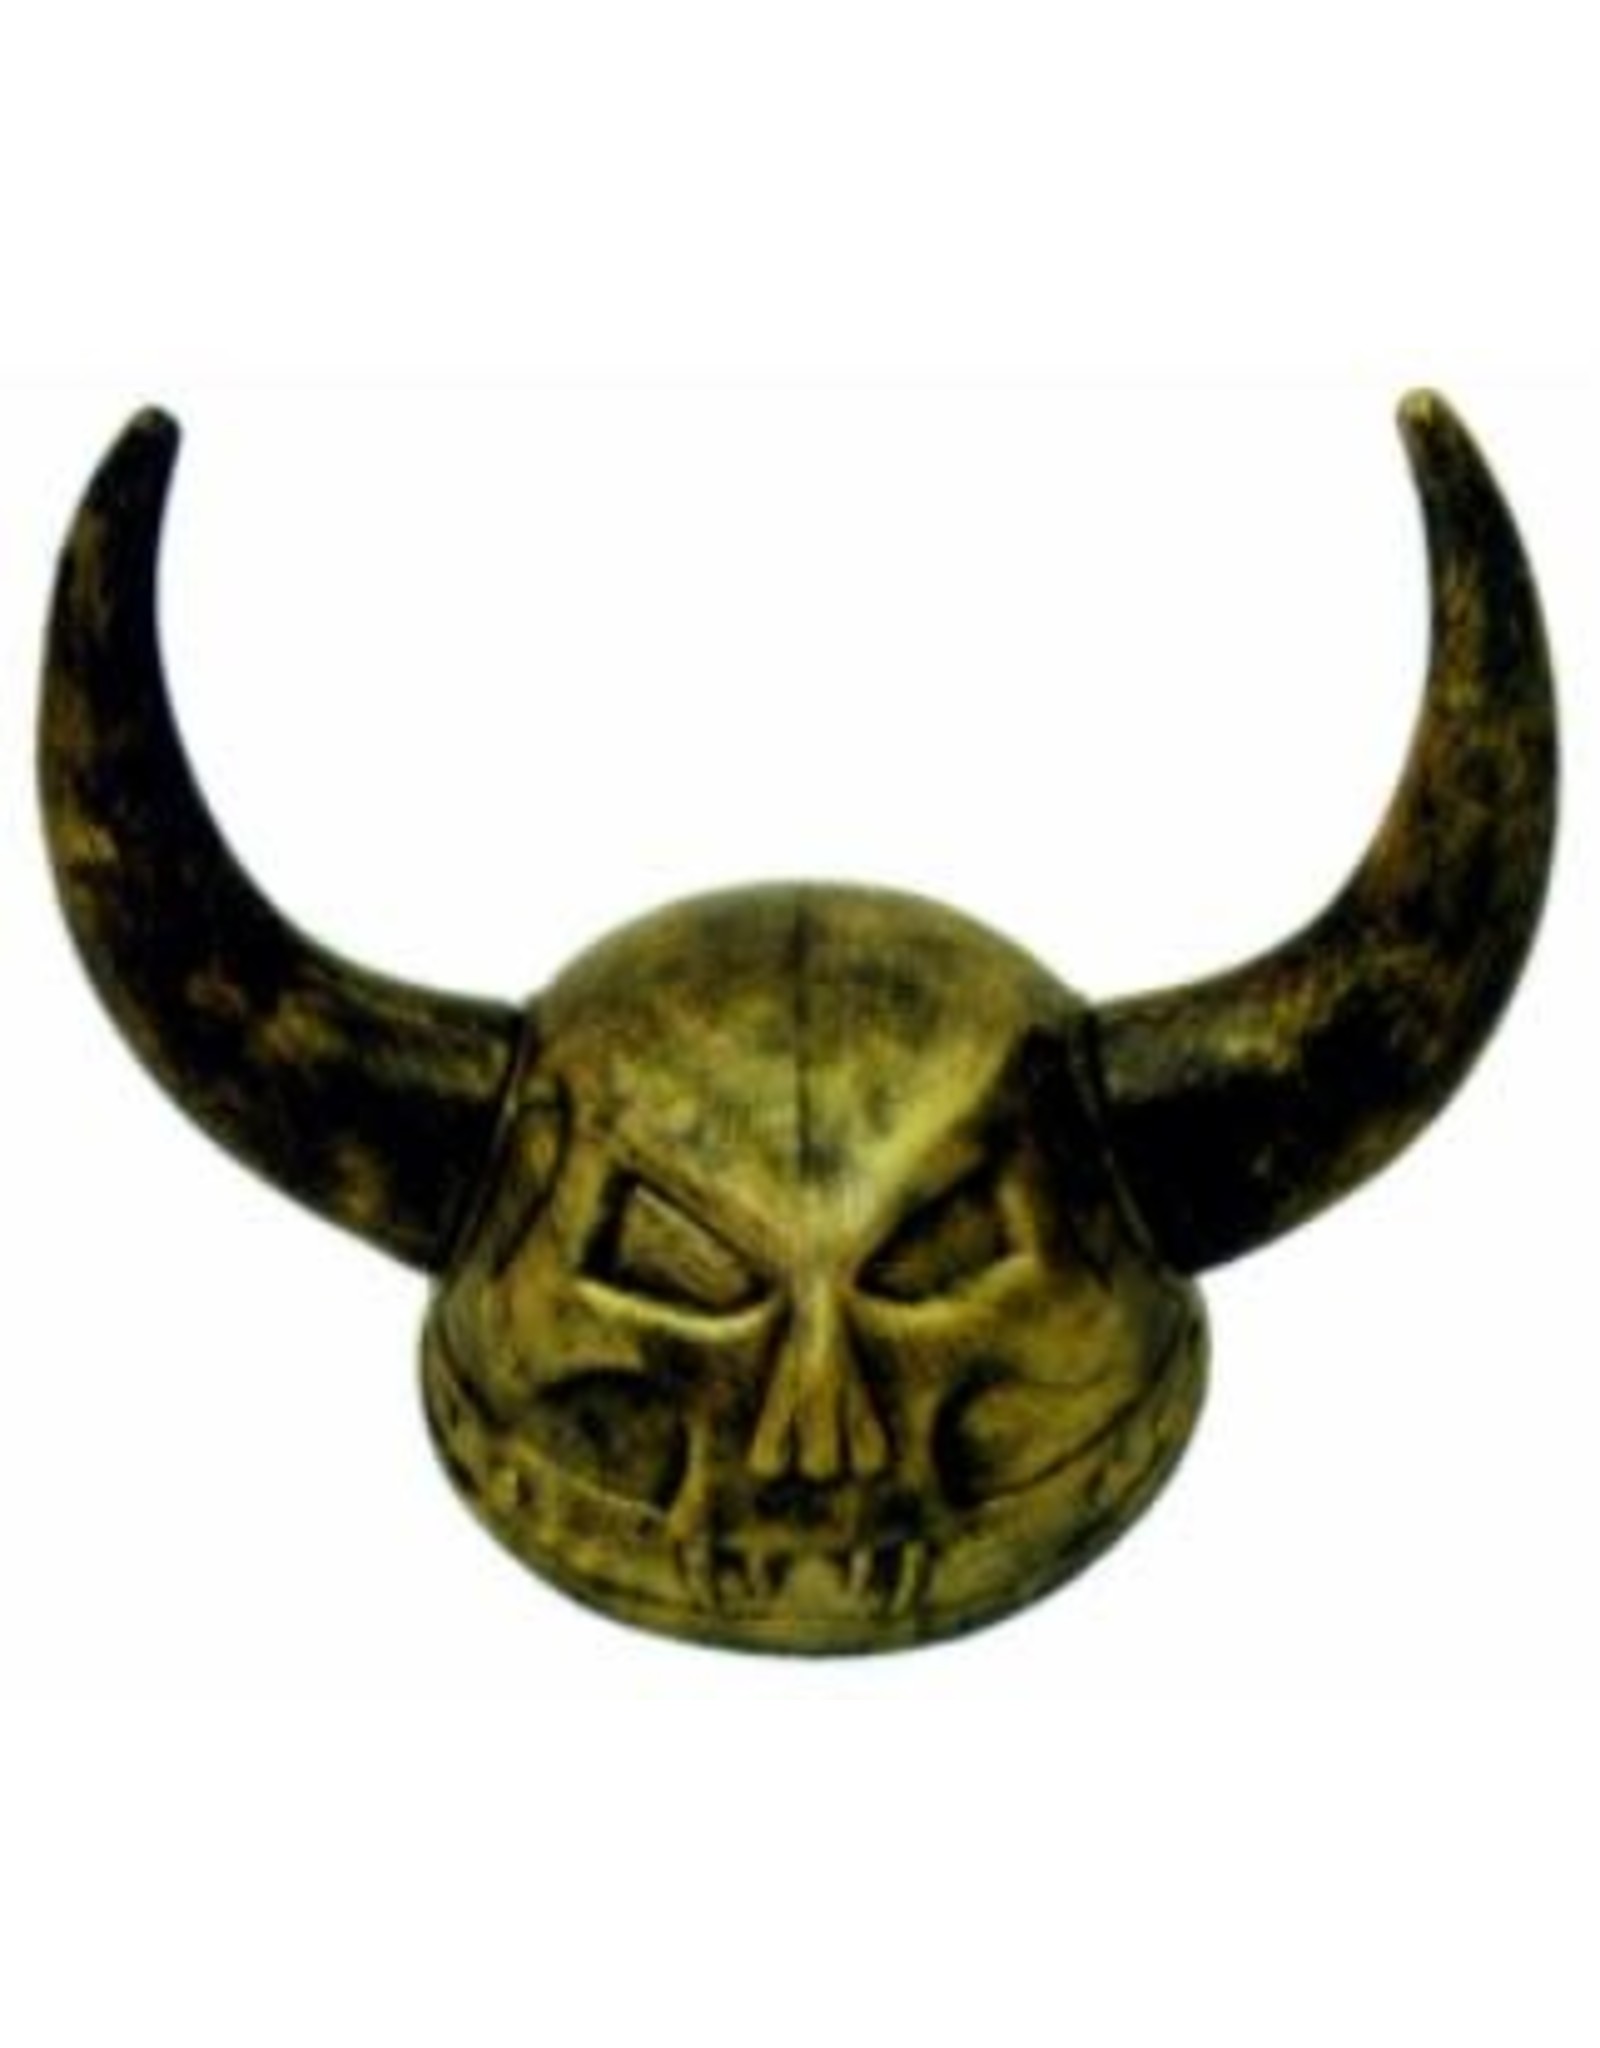 SKS Novelty Gold Skull Viking Helmet